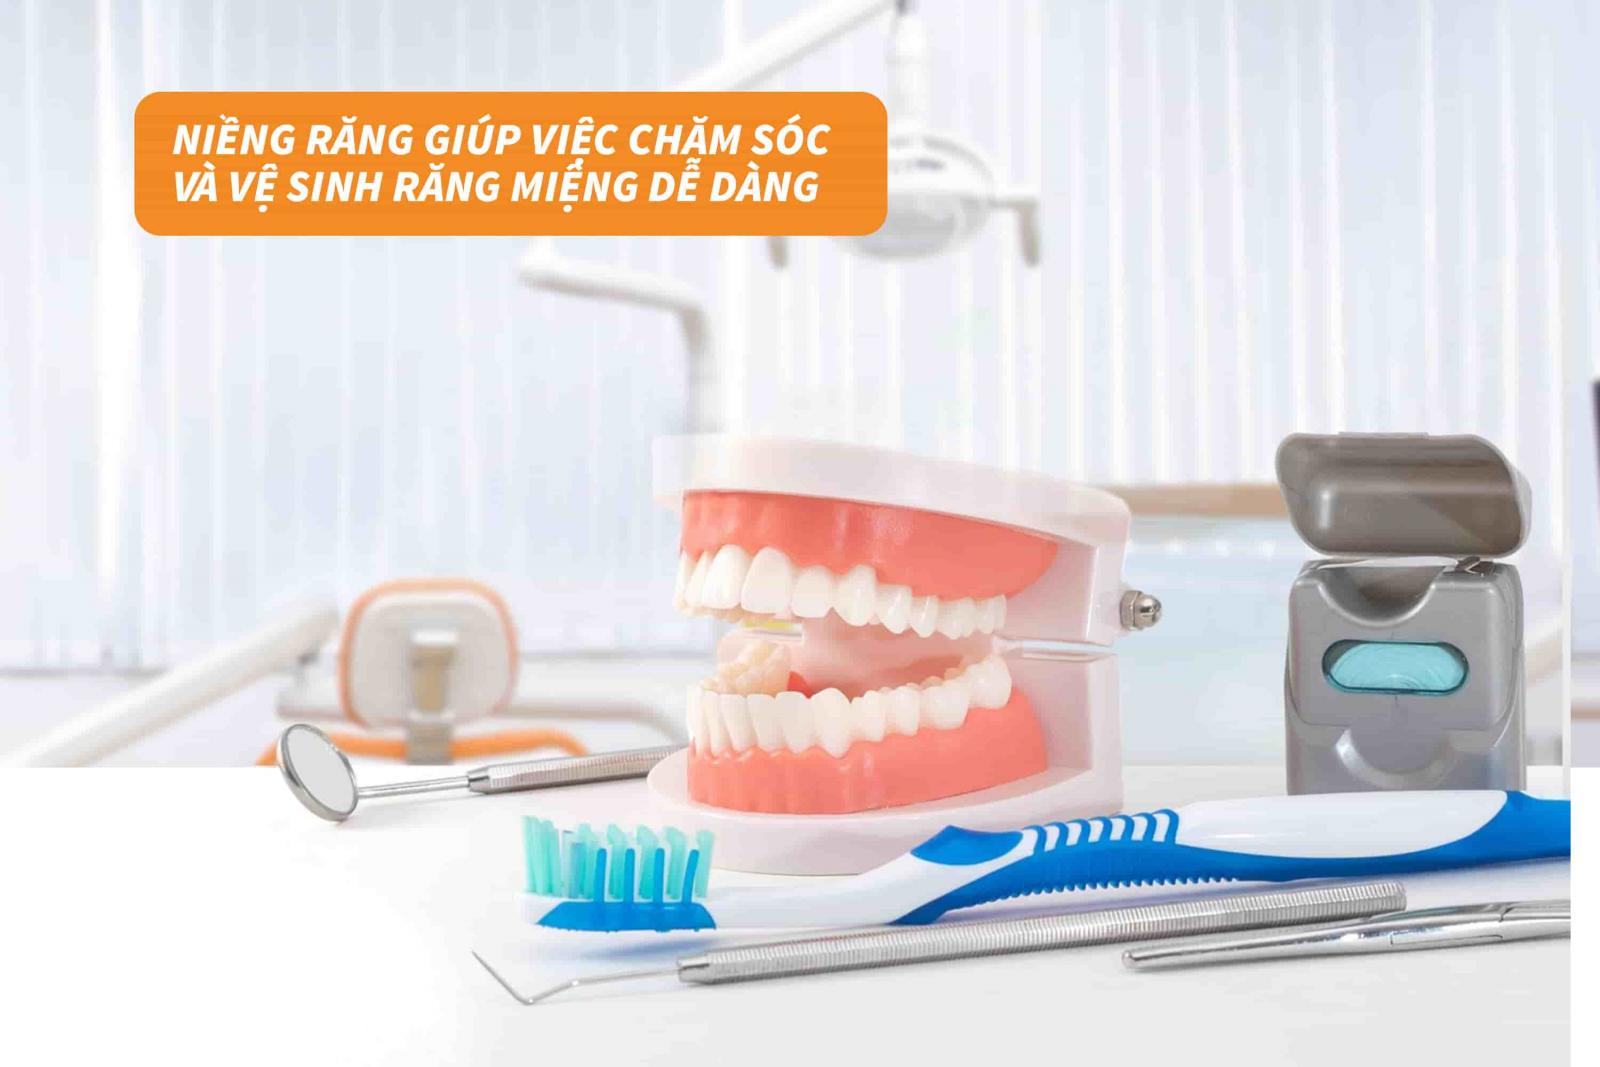 Niềng răng giúp chăm sóc và vệ sinh răng miệng dễ dàng